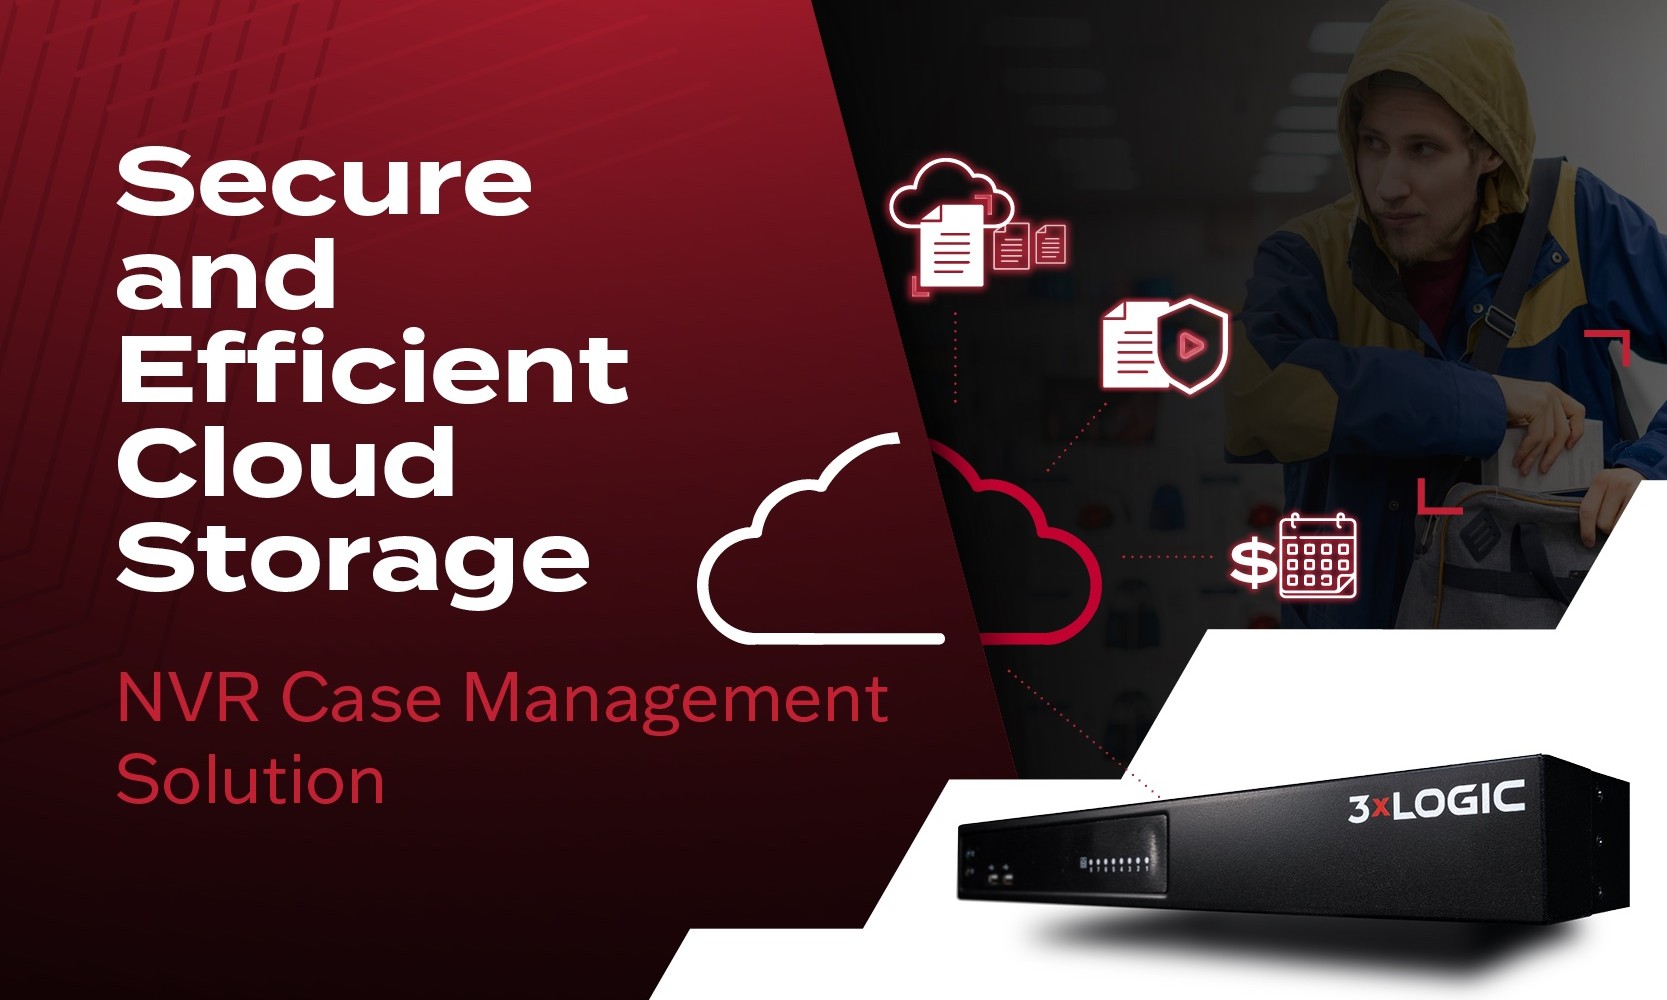 3xLOGIC launches VIGIL NVR Case Management providing cloud storage capability for sensitive video clips